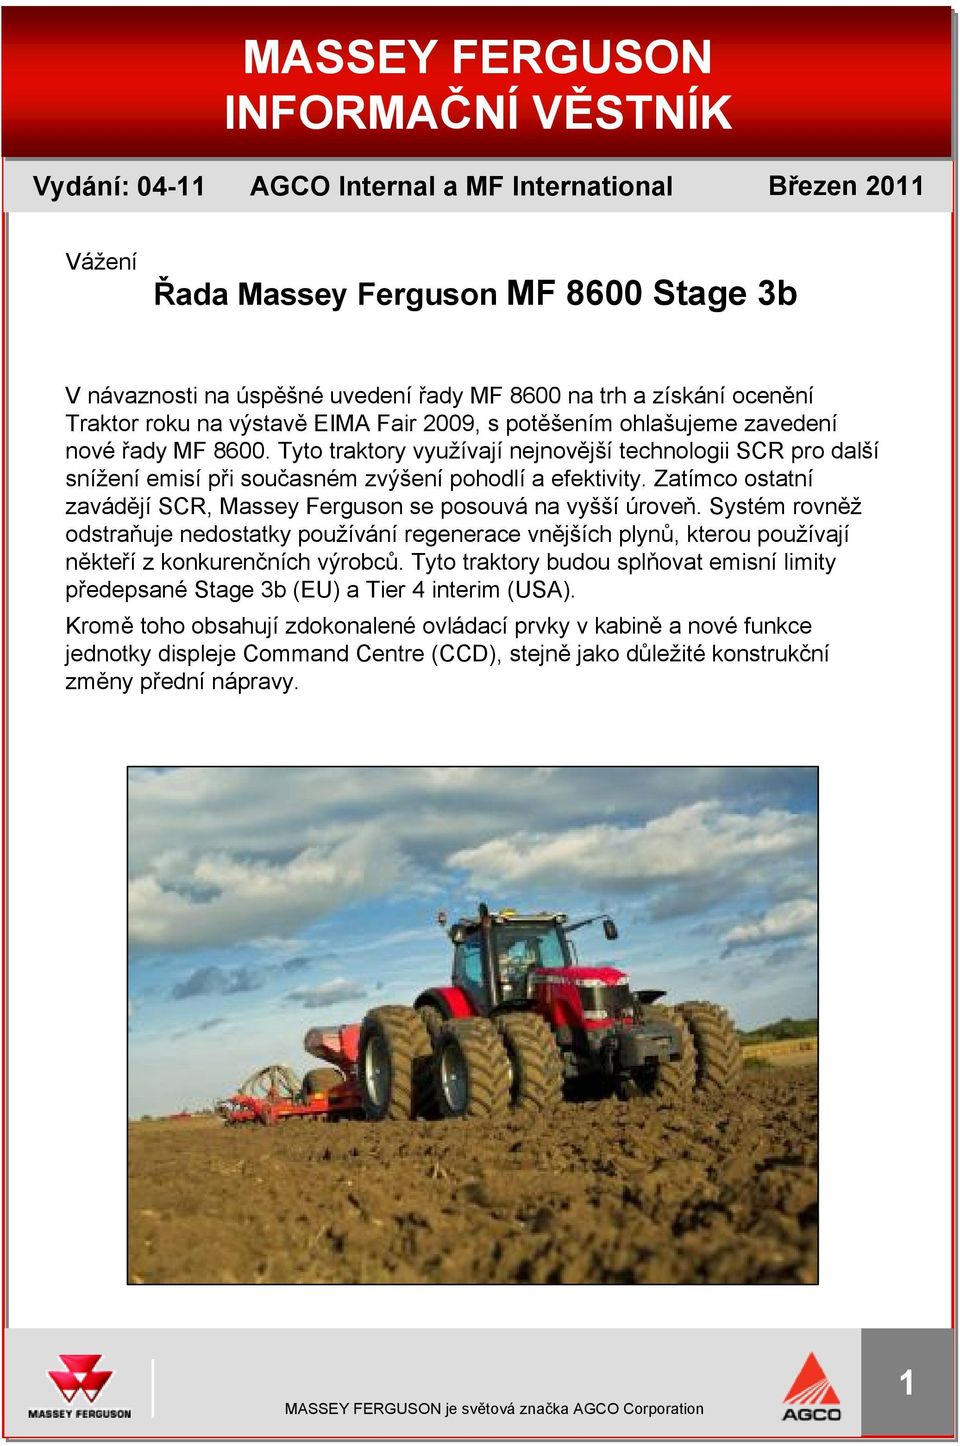 Tyto traktory využívají nejnovější technologii SCR pro další snížení emisí při současném zvýšení pohodlí a efektivity. Zatímco ostatní zavádějí SCR, Massey Ferguson se posouvá na vyšší úroveň.